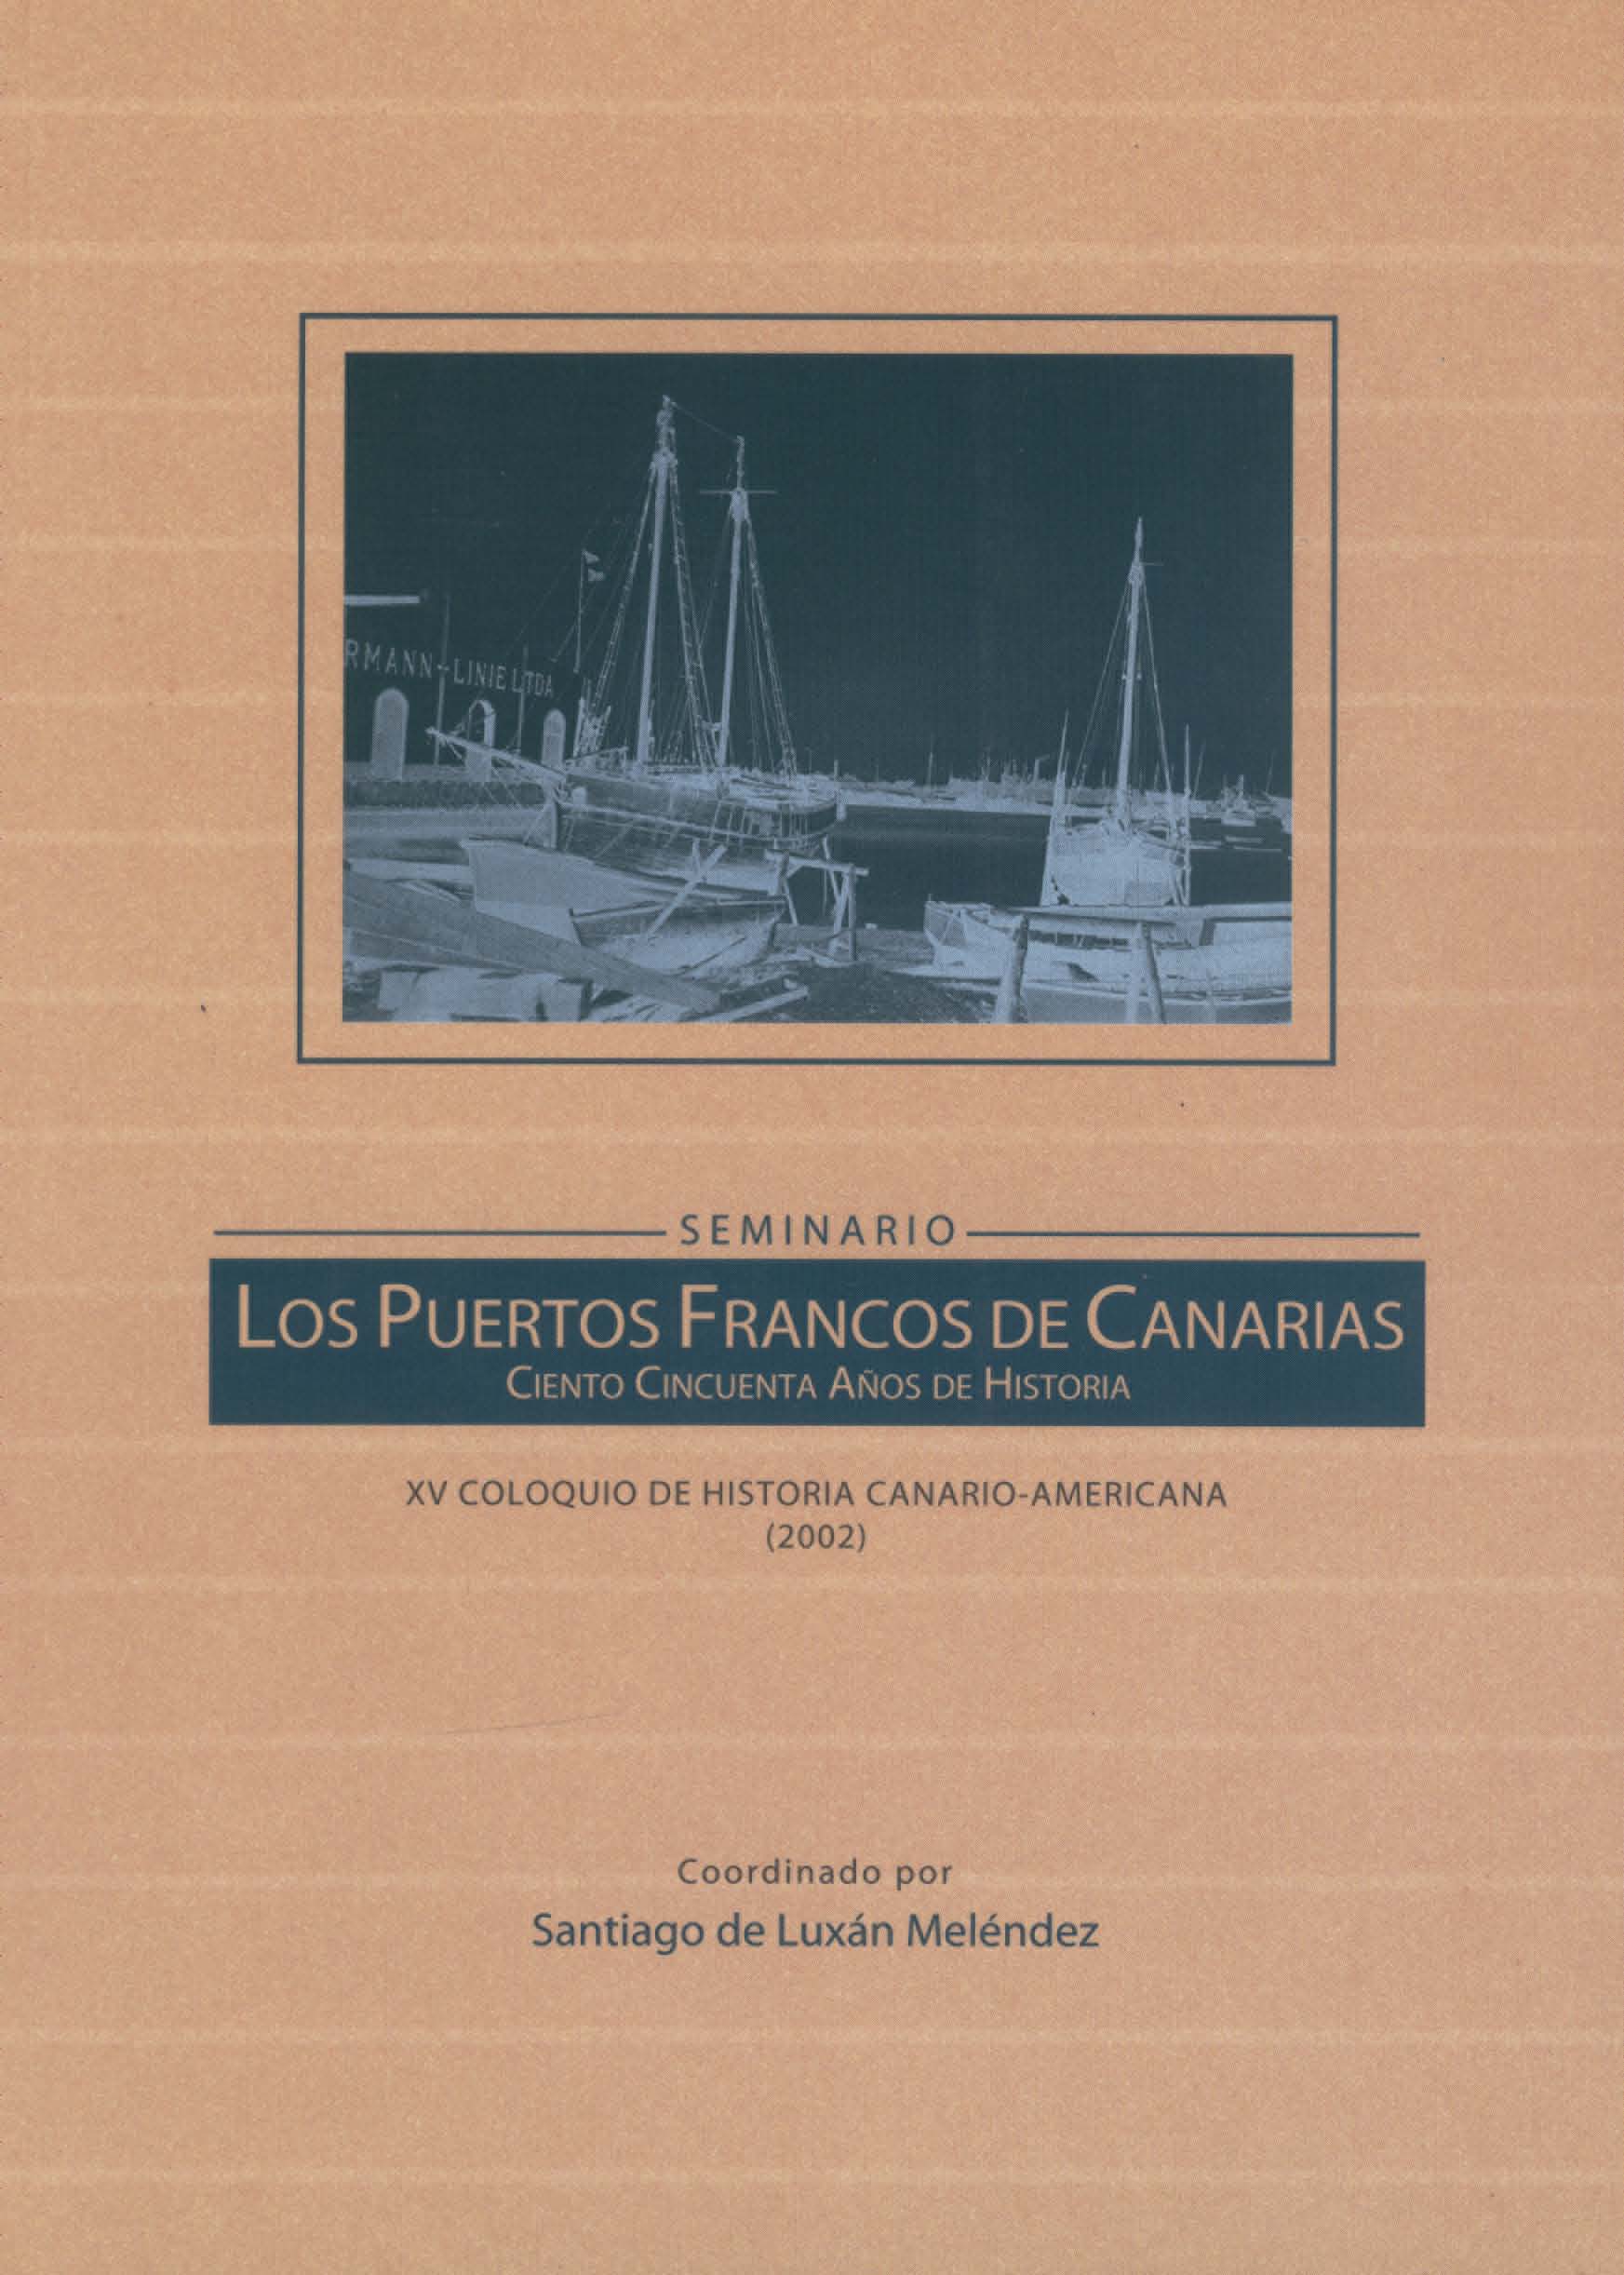 Los puertos francos de Canarias